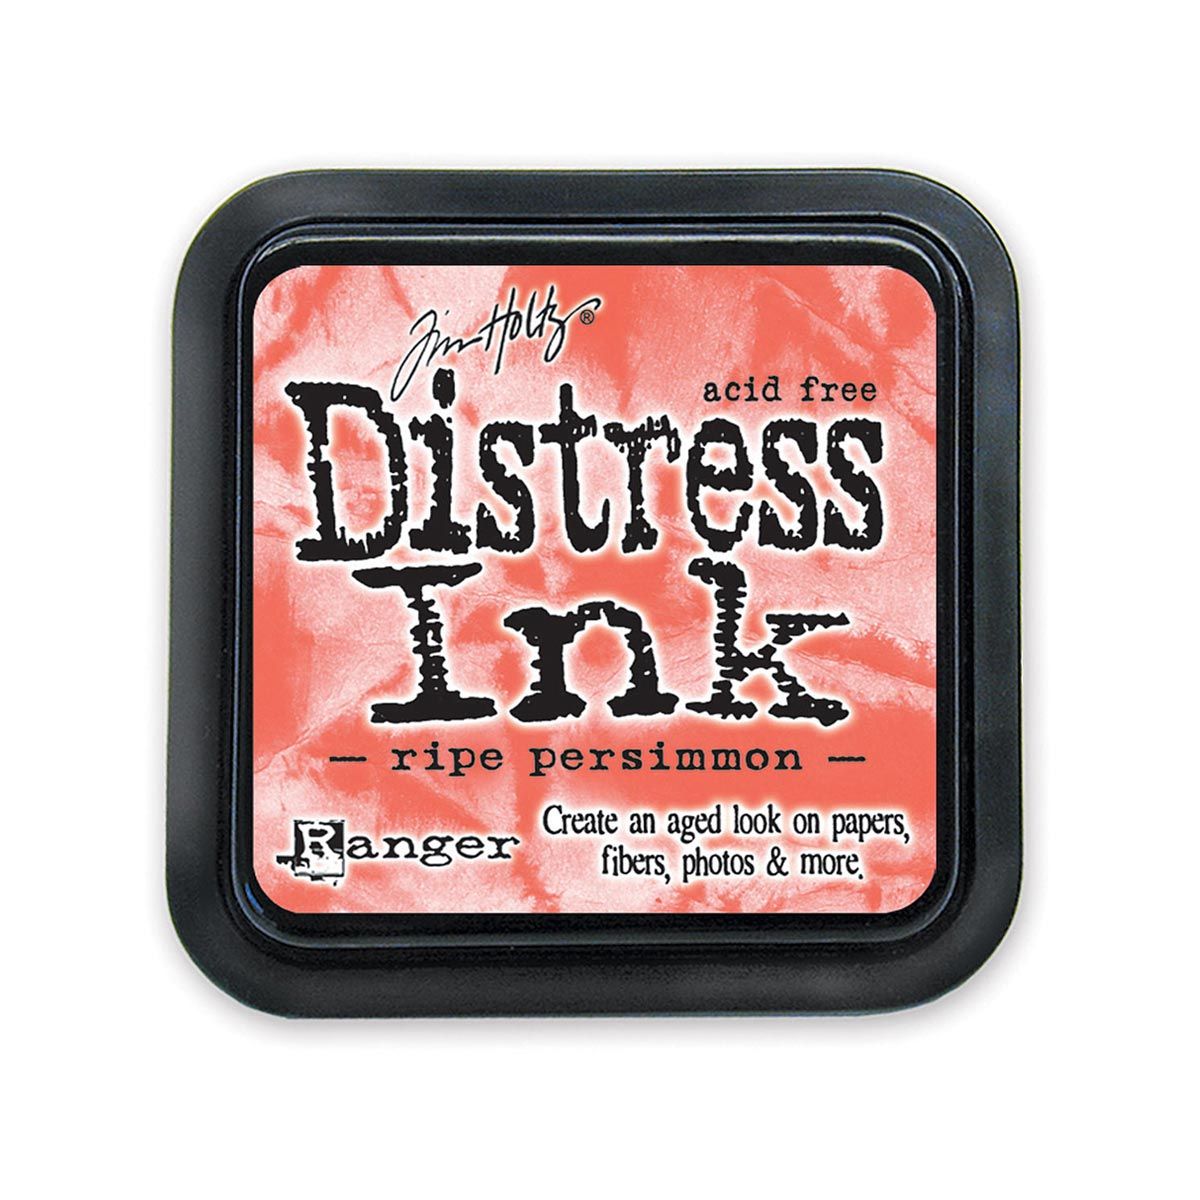 Tim Holtz Mini Distress Ink Pad, Ripe Persimmon 1x1-in